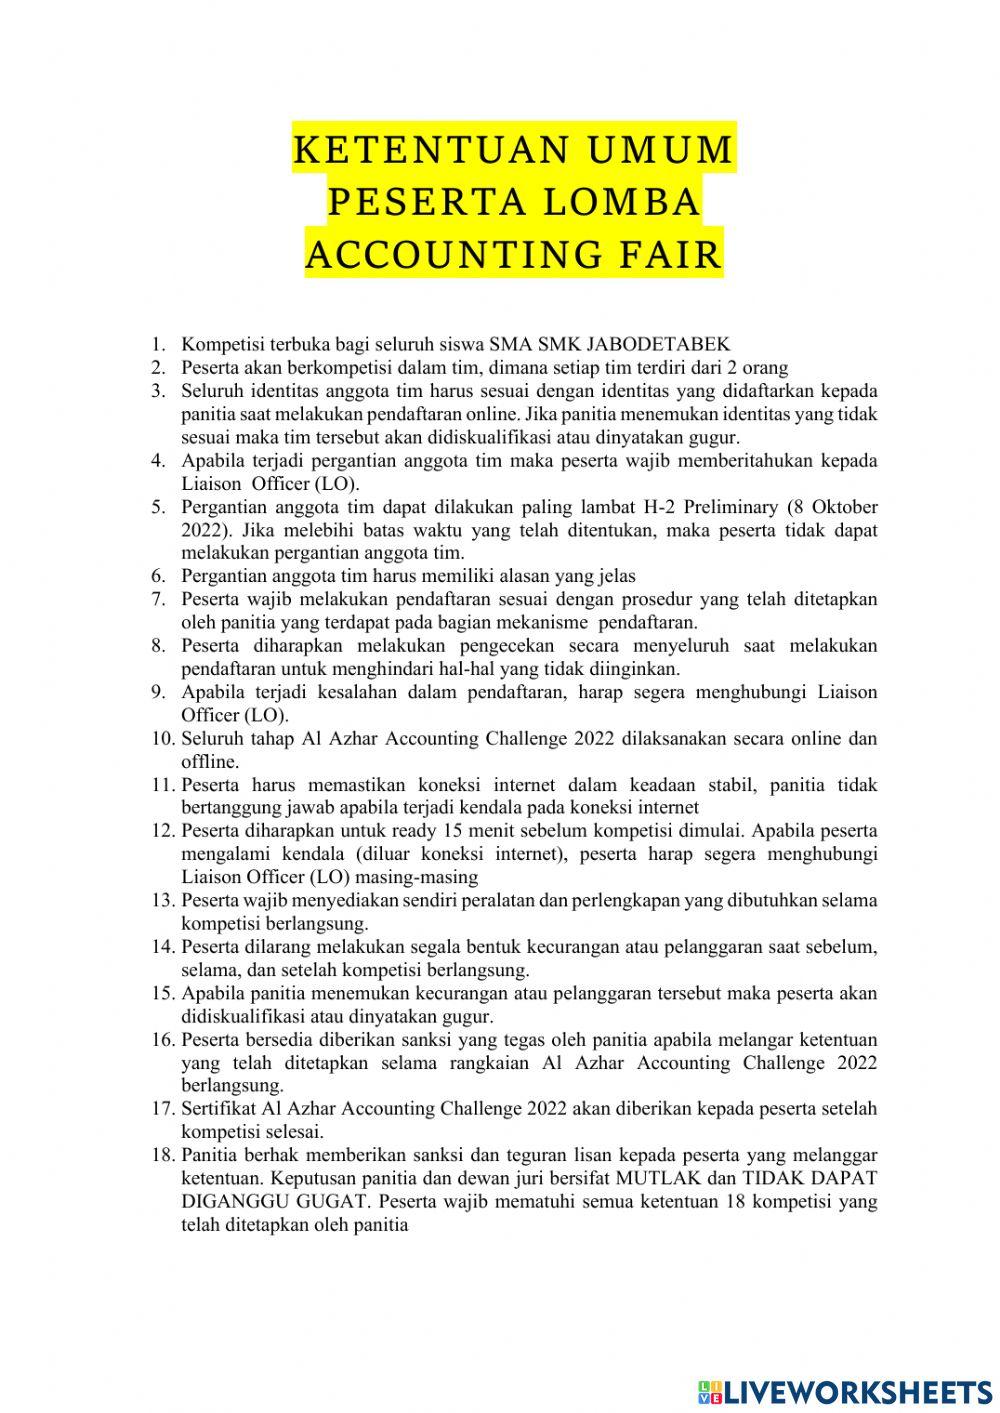 Preliminary sesi 2 accountingfair